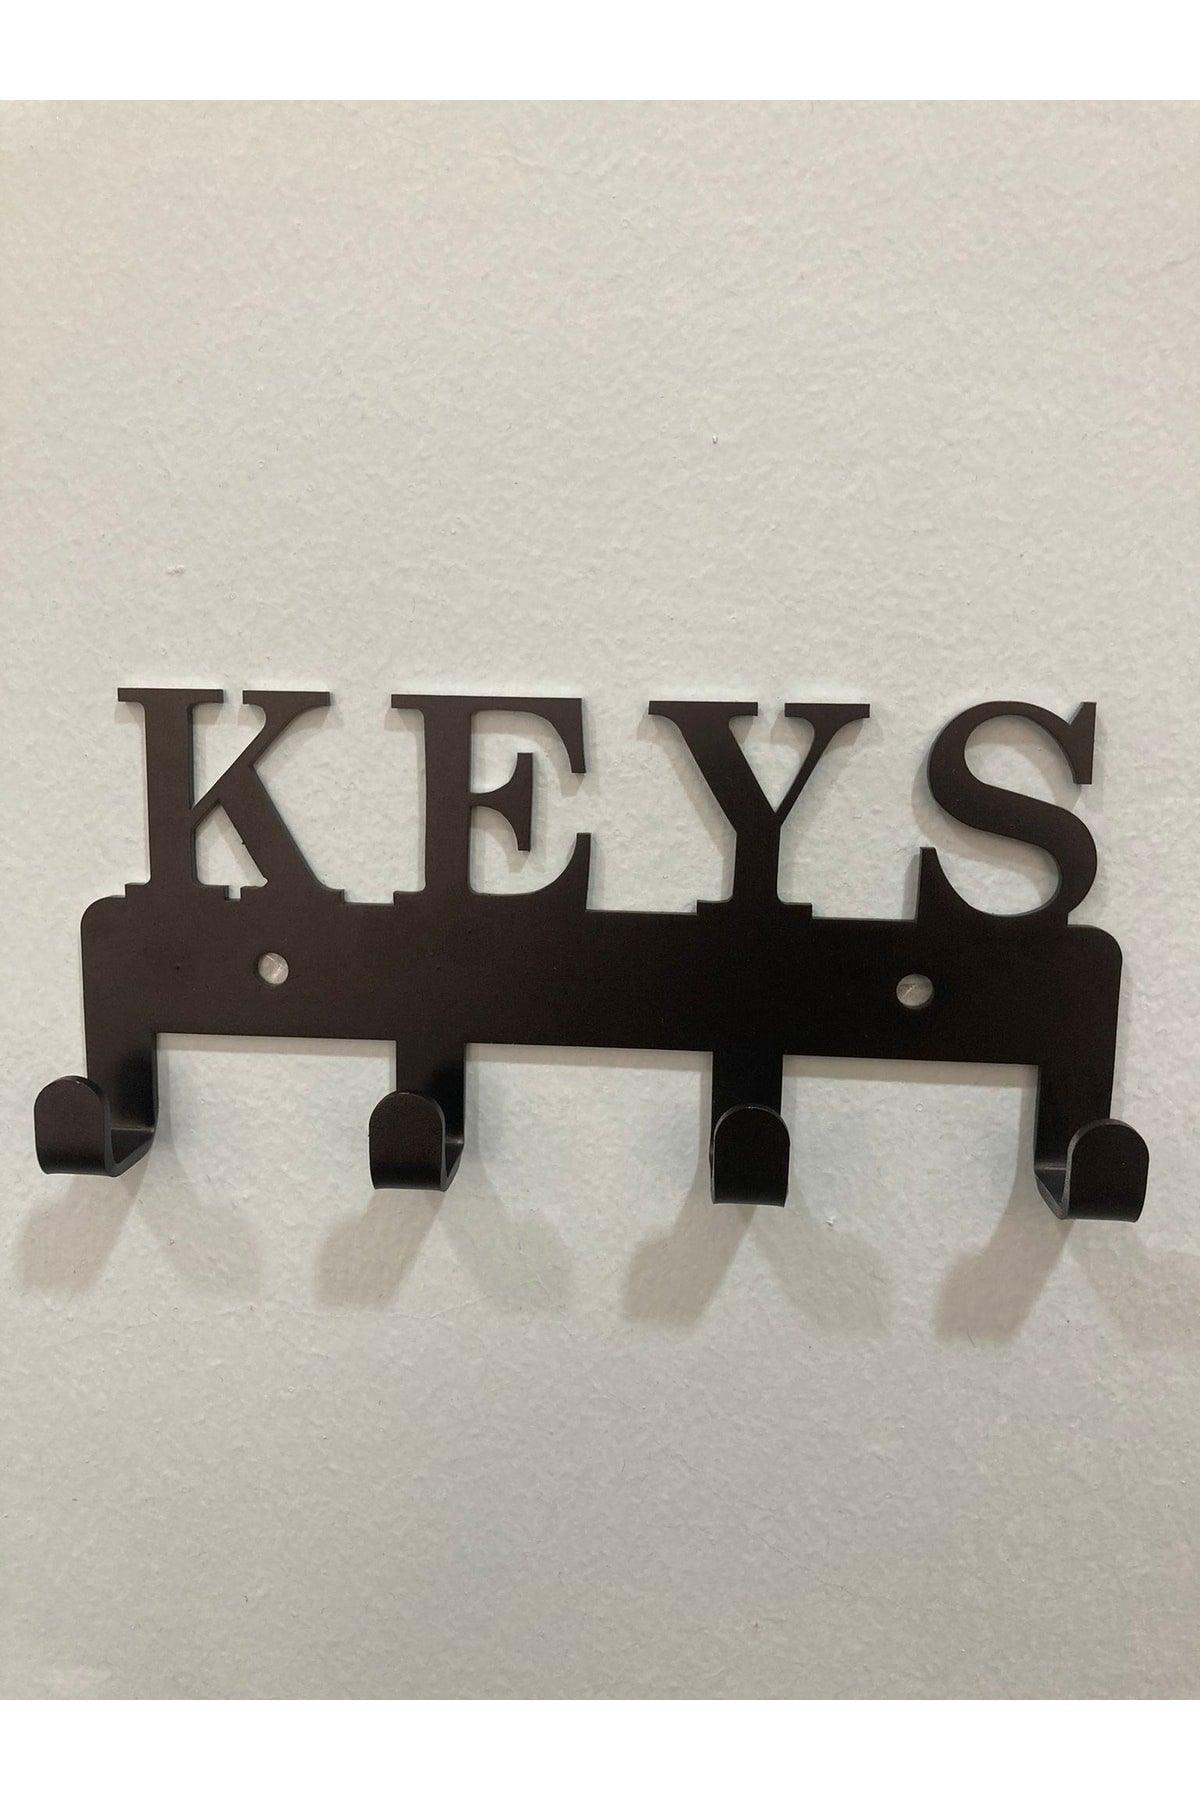 (keys) Metal Key Holder - Decorative Key Holder - Swordslife